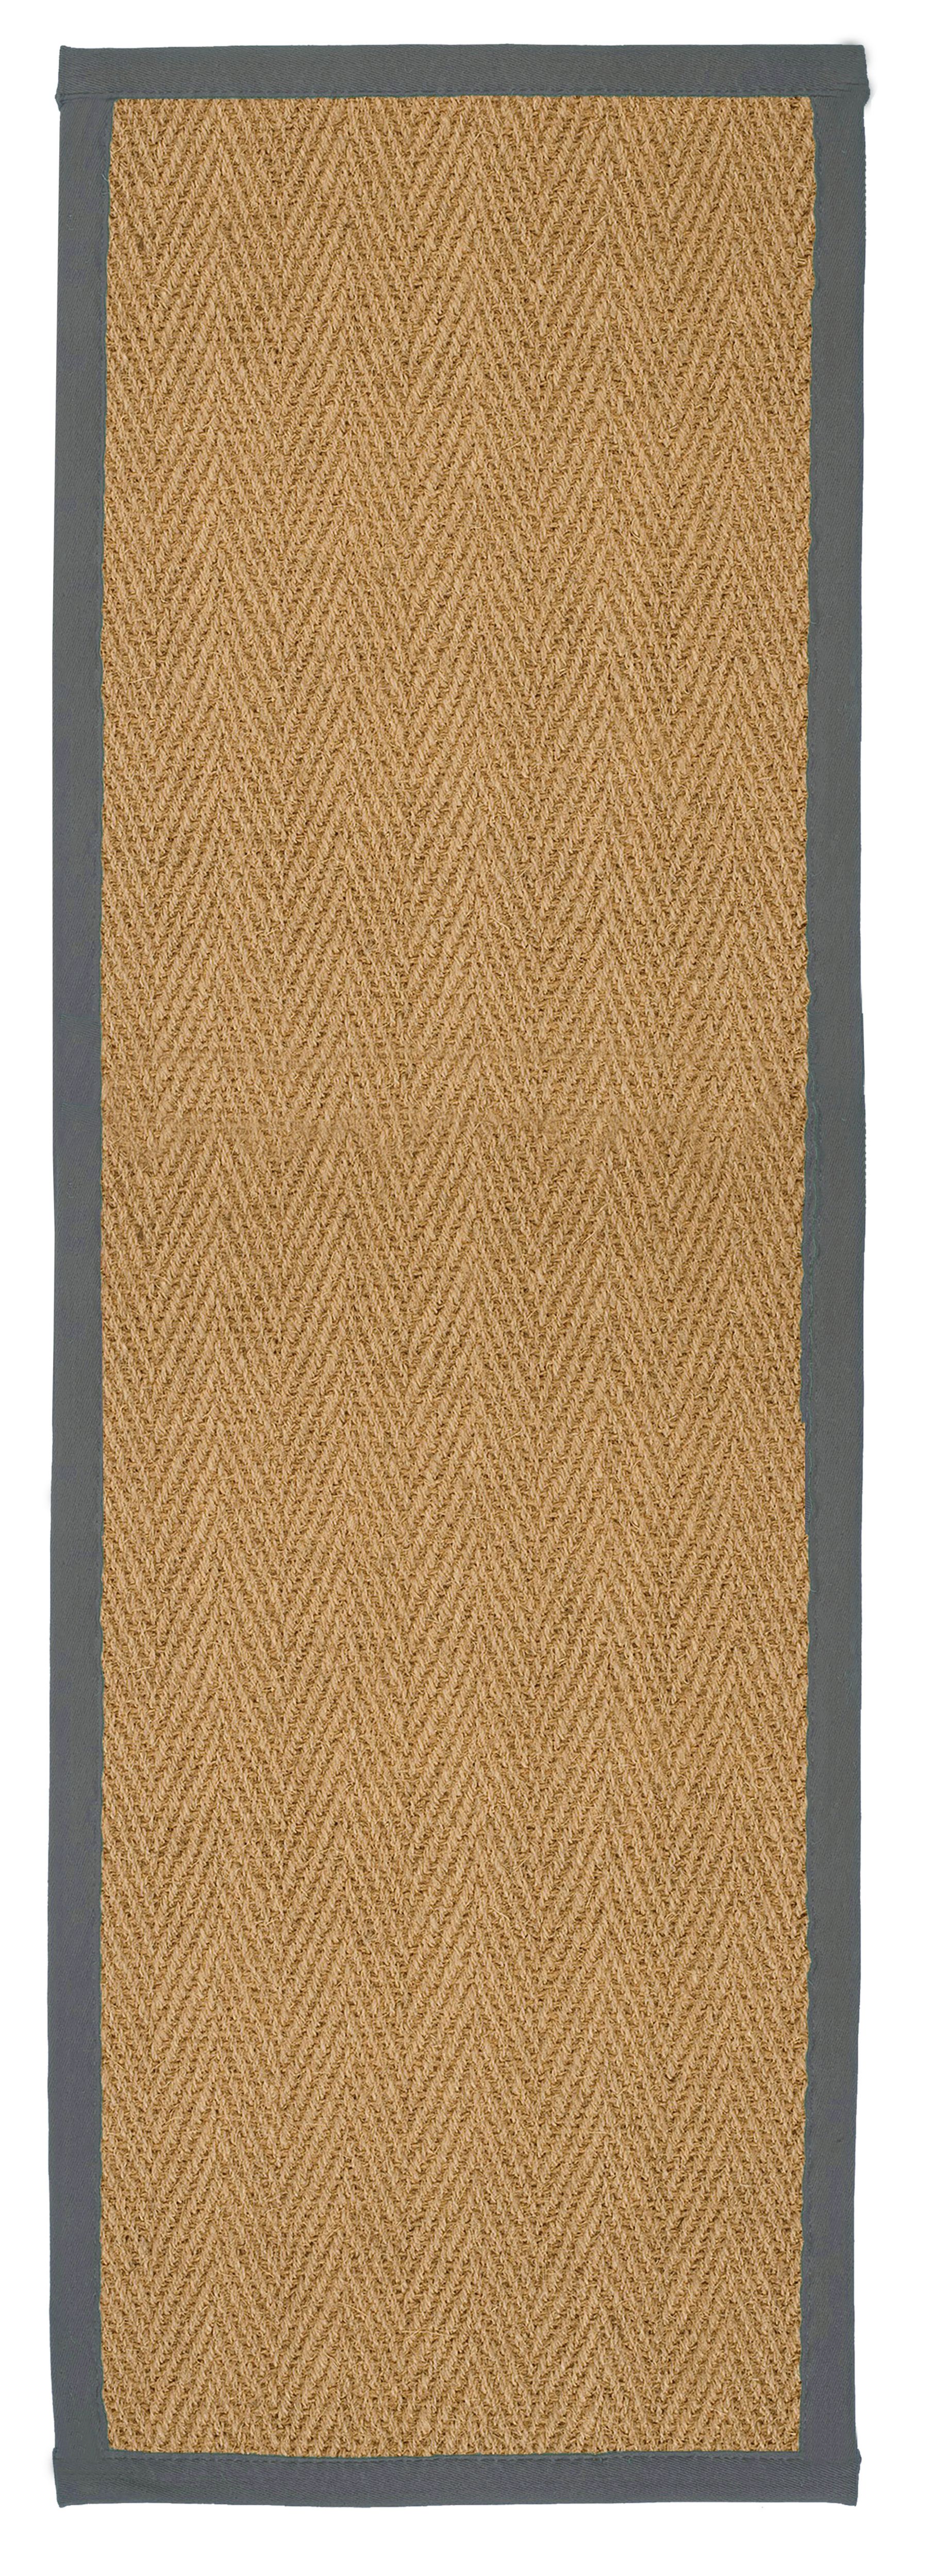 Brown, grey Herringbone weave Rug 180cmx60cm